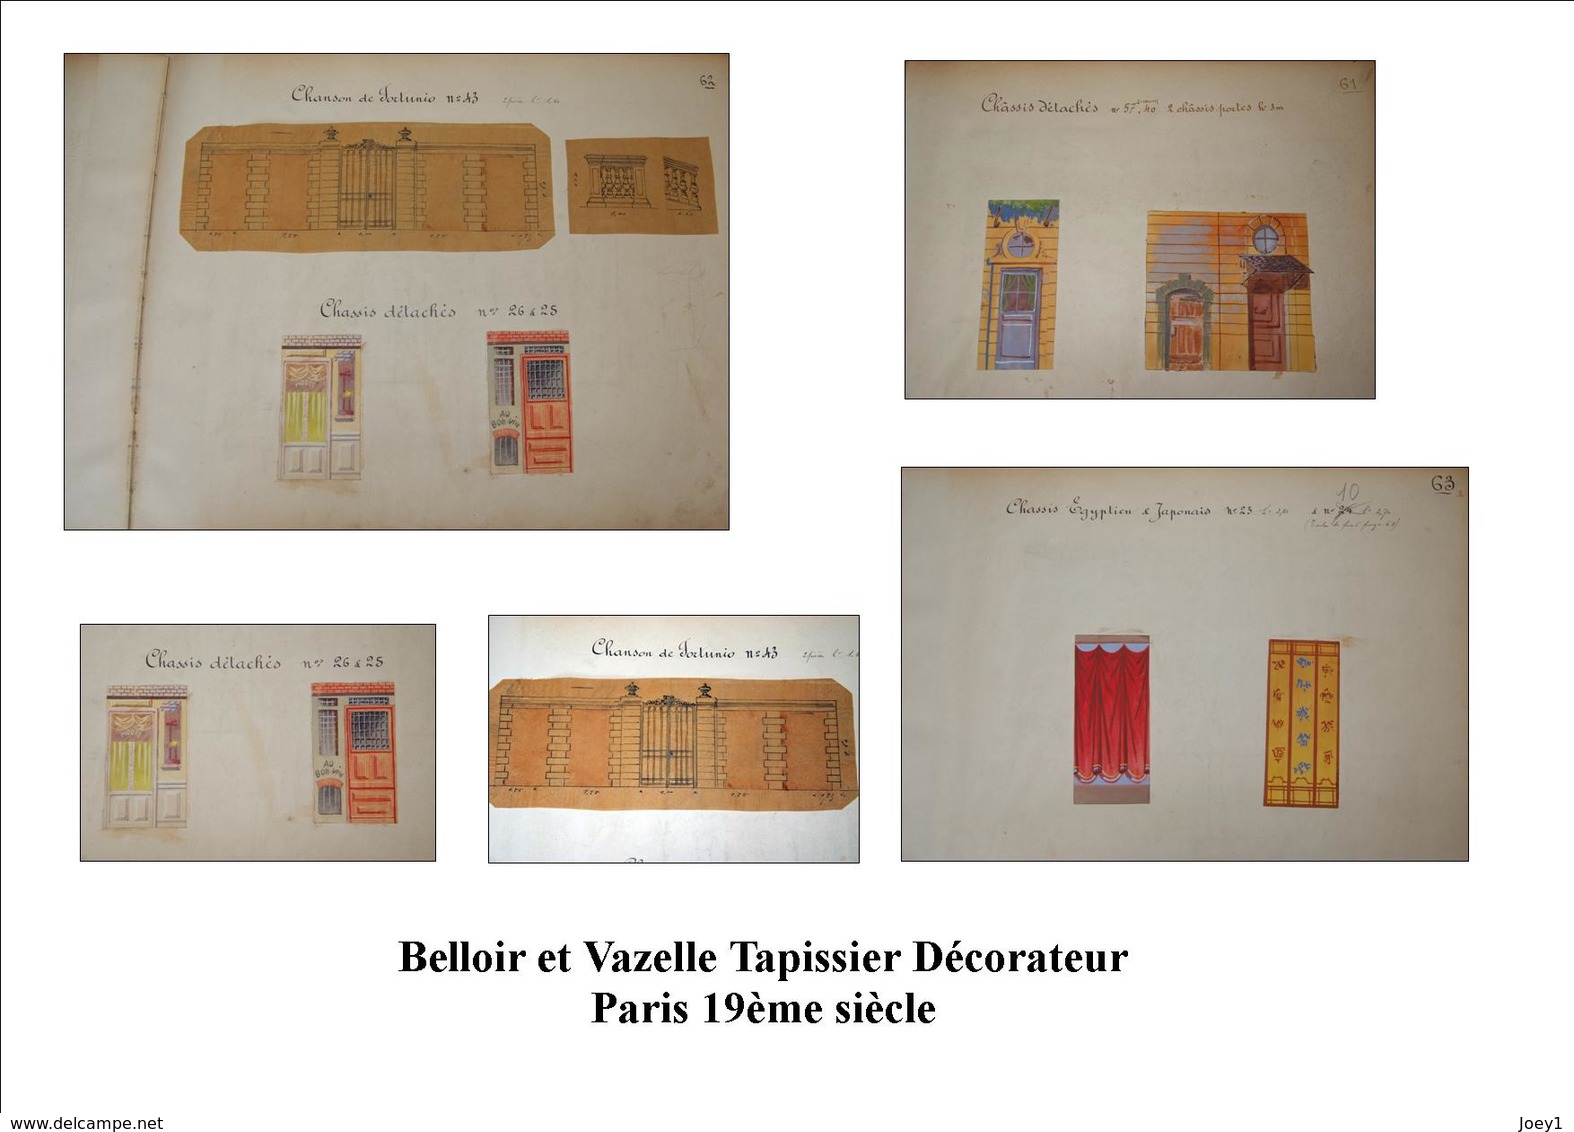 1 ensemble de dessin Belloir et Vazelle peintres décorateurs du 19ème siècle